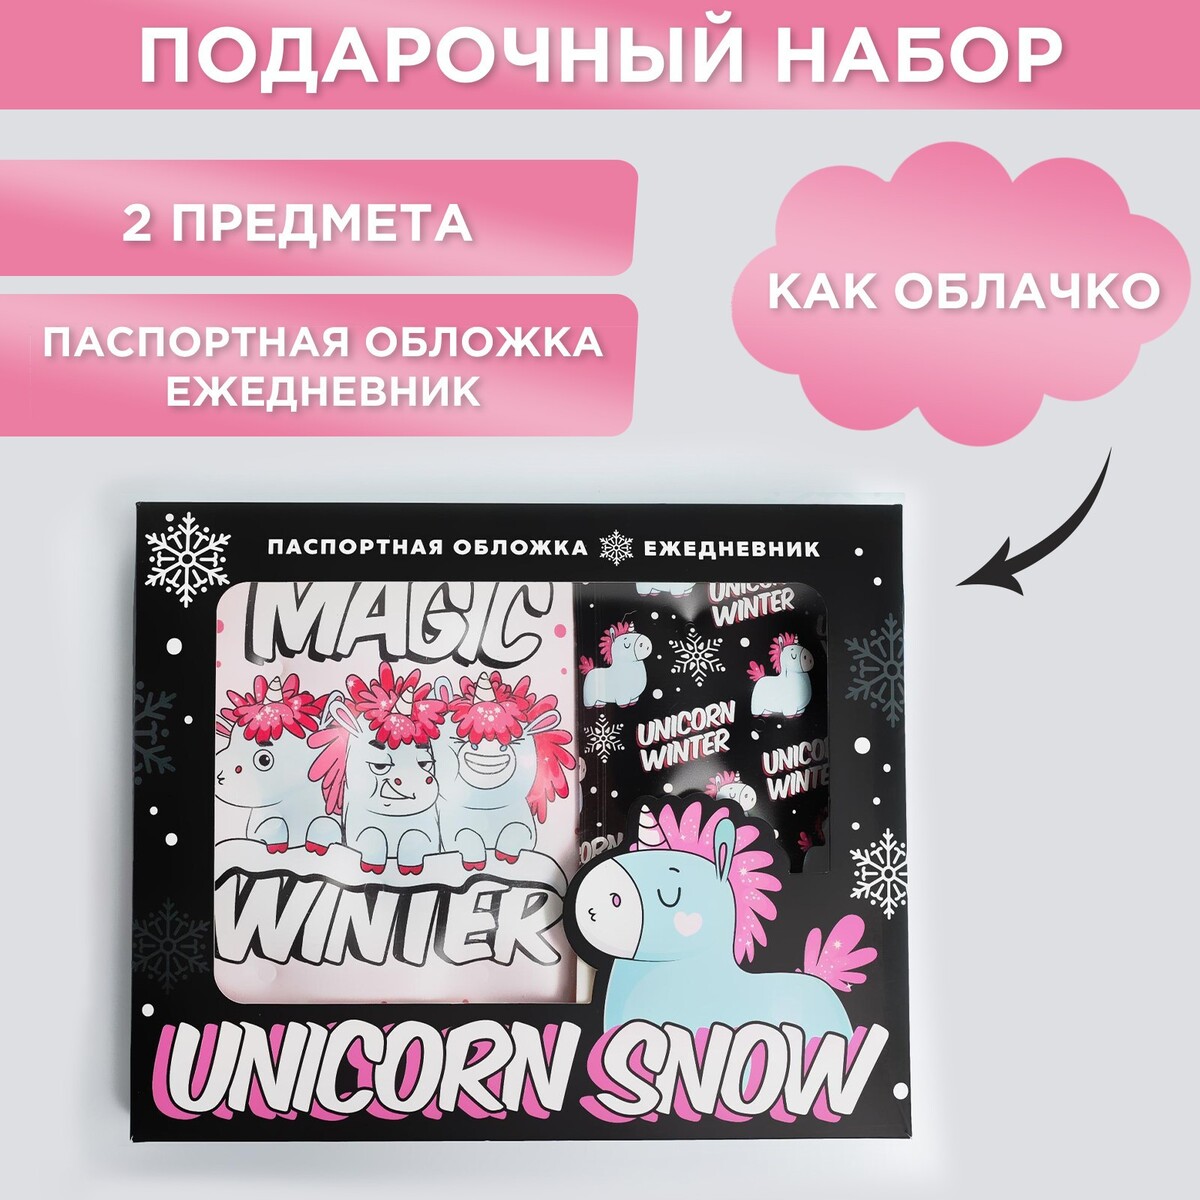 Набор unicorn snow: паспортная обложка-облачко и ежедневник-облачко набор коньки детские раздвижные snow cat с роликовой платформой защита р 26 29